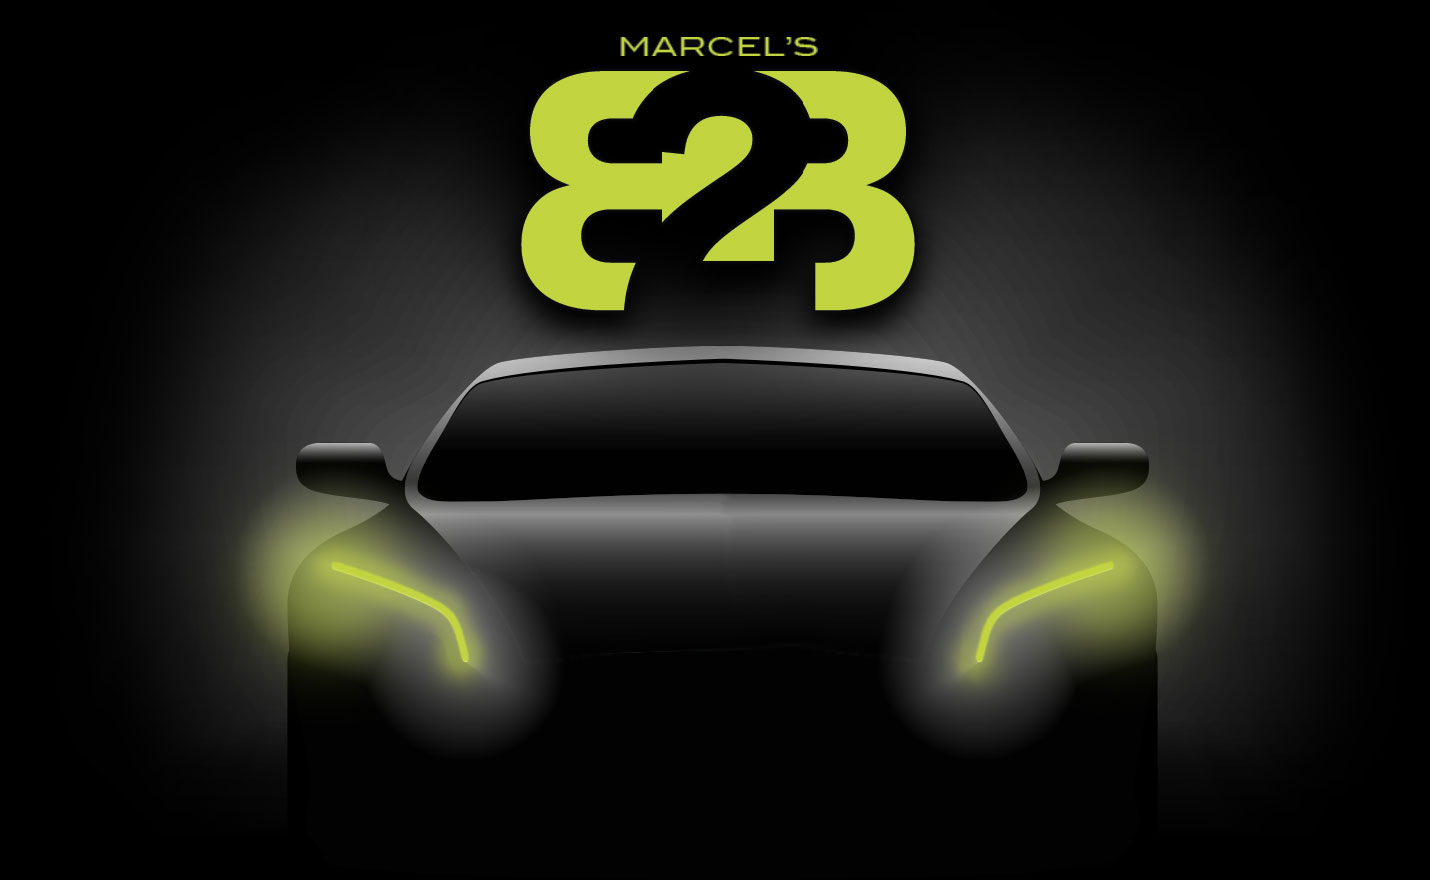 Marcel's B2B / Auto Paint & Collision